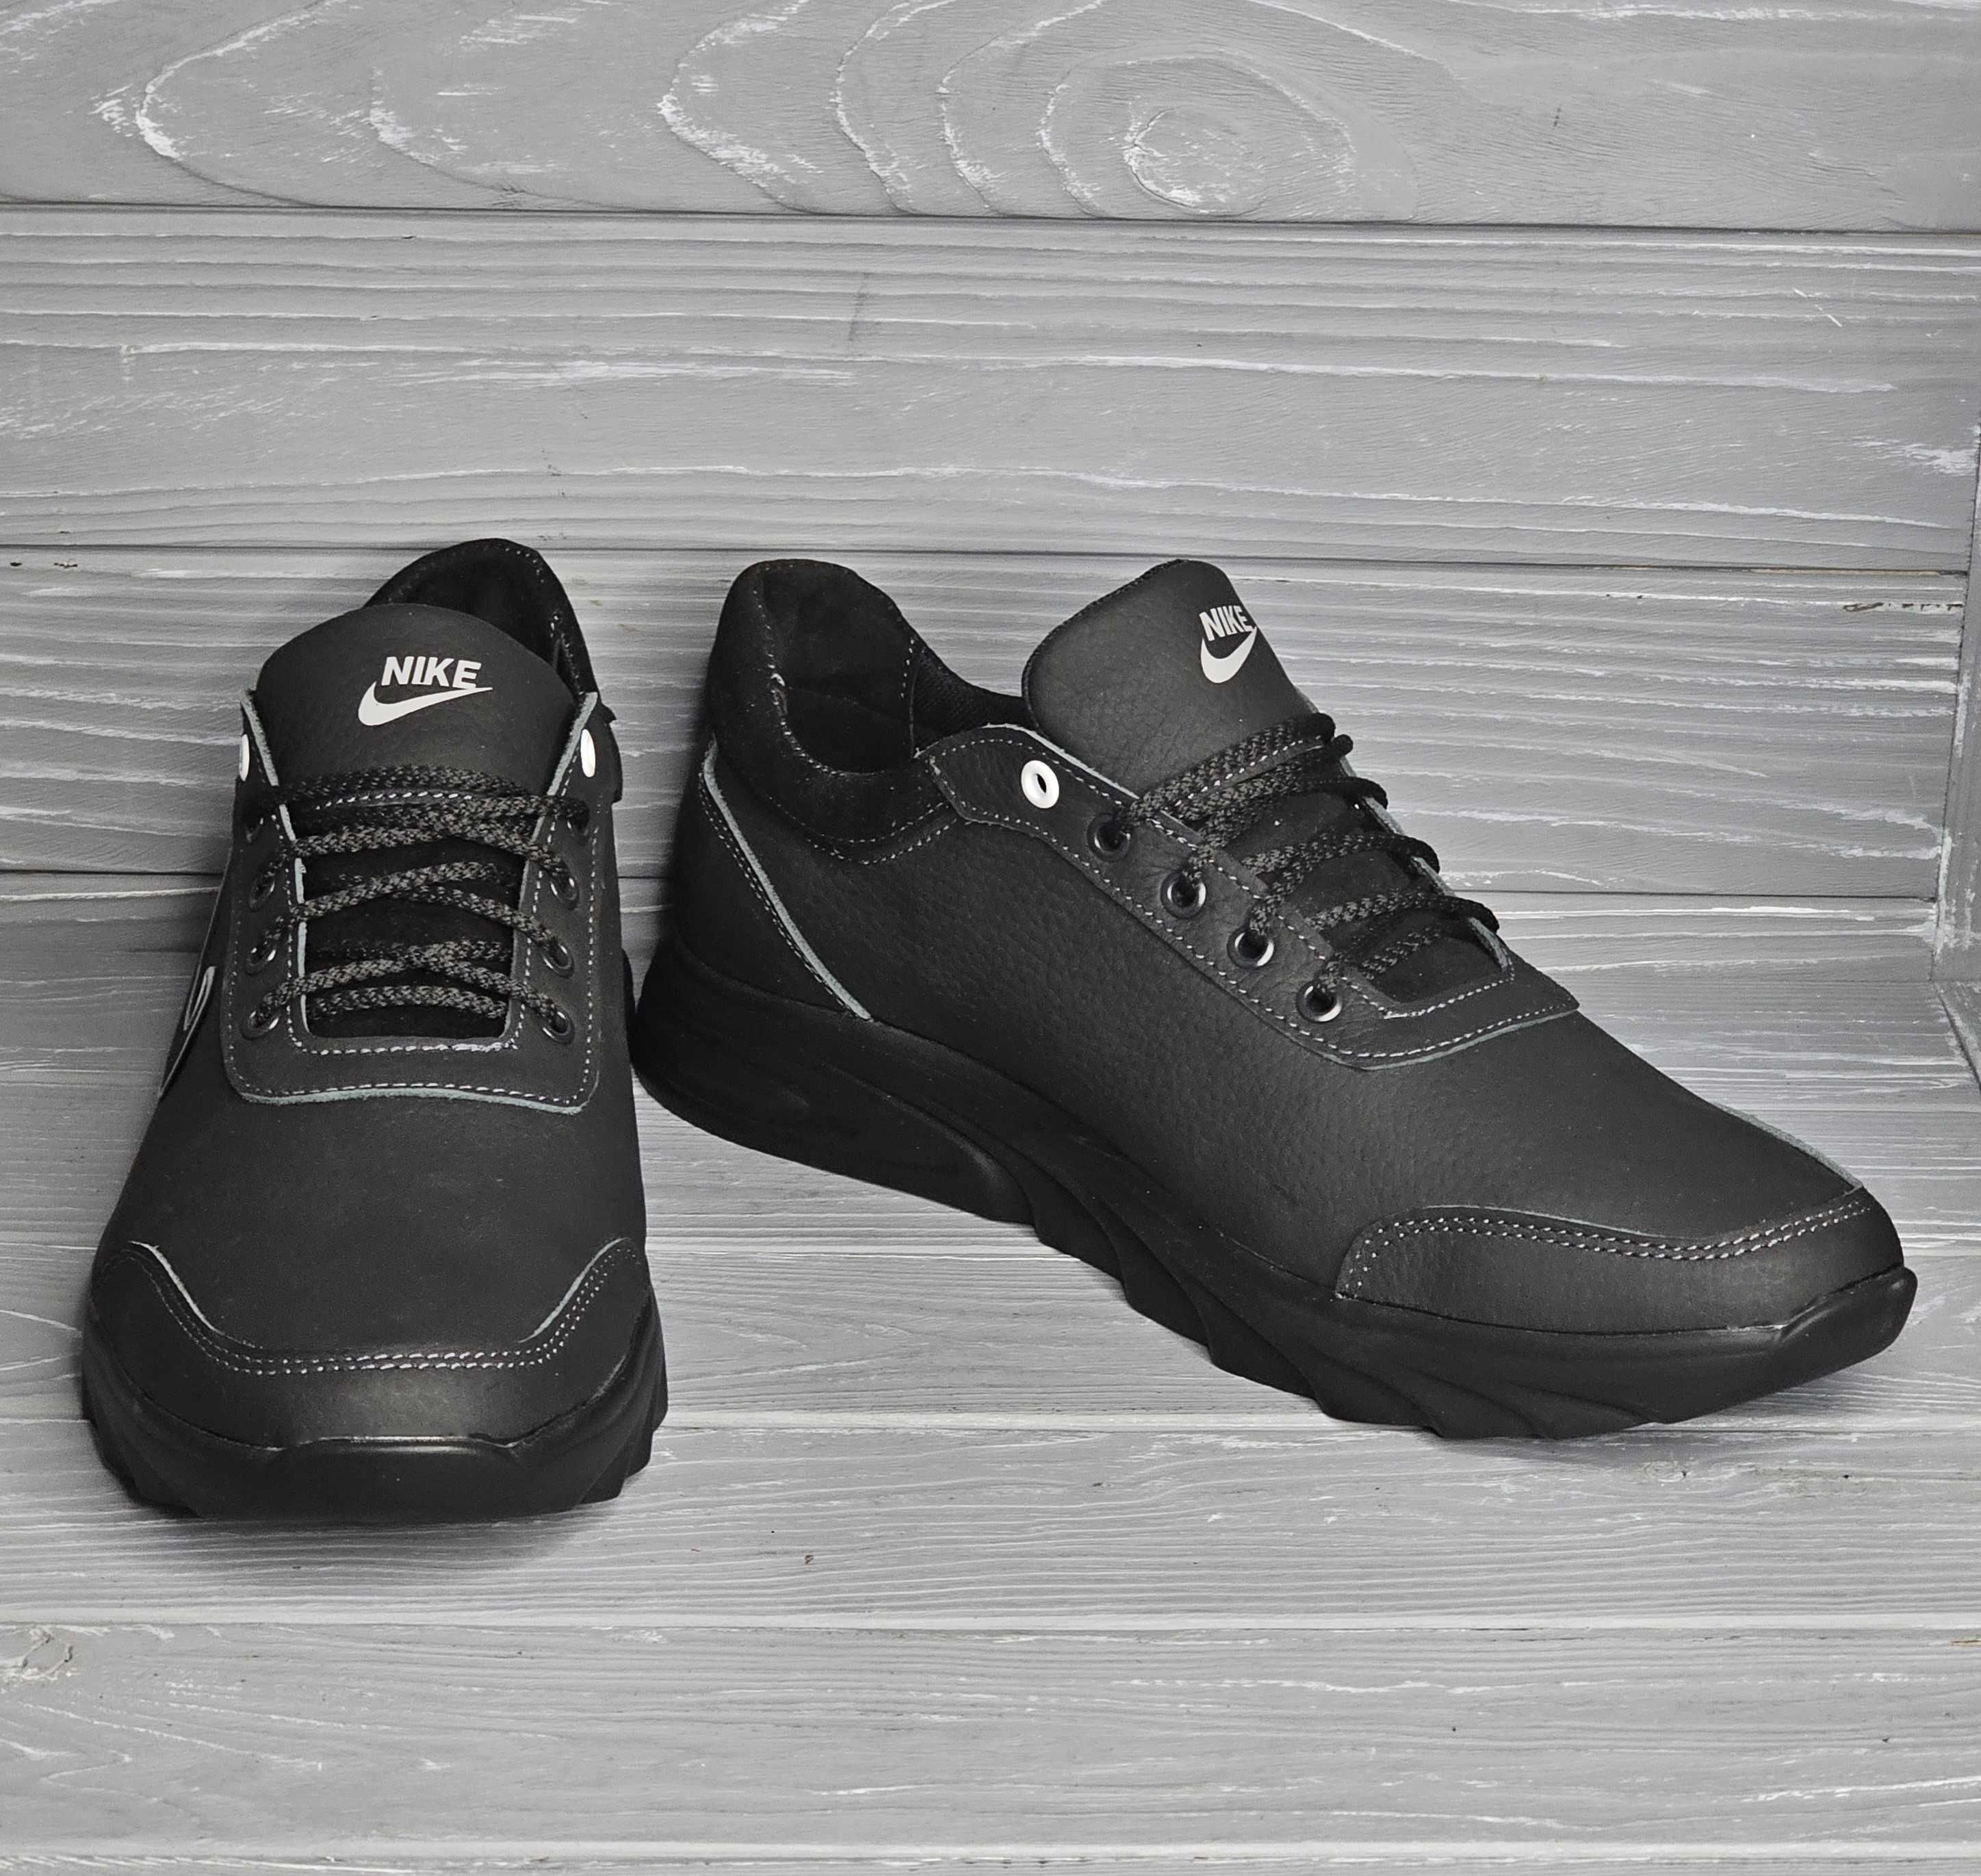 46-50рр Кожаные мужские кроссовки больших размеров в стиле Nike баталы